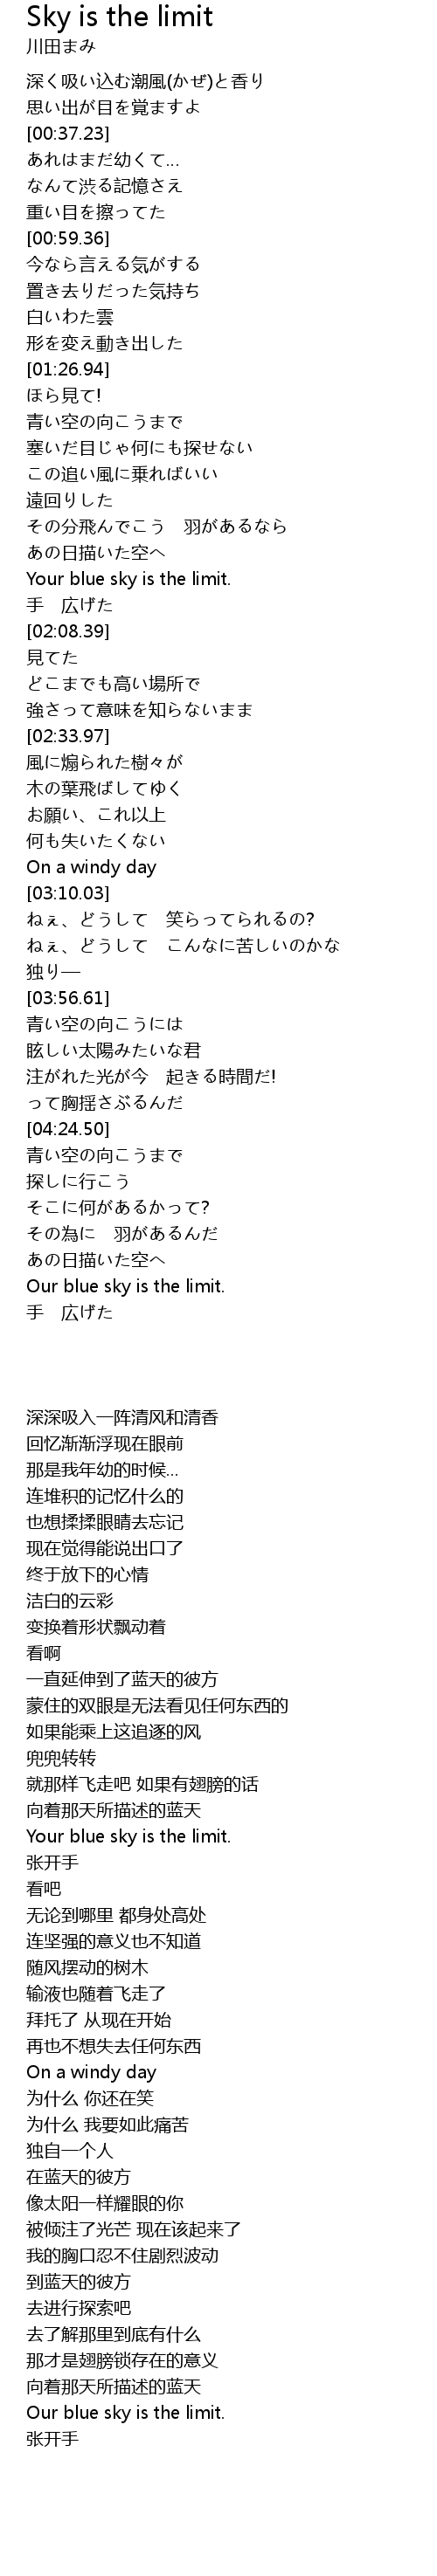 Sky Is The Limit Lyrics Follow Lyrics